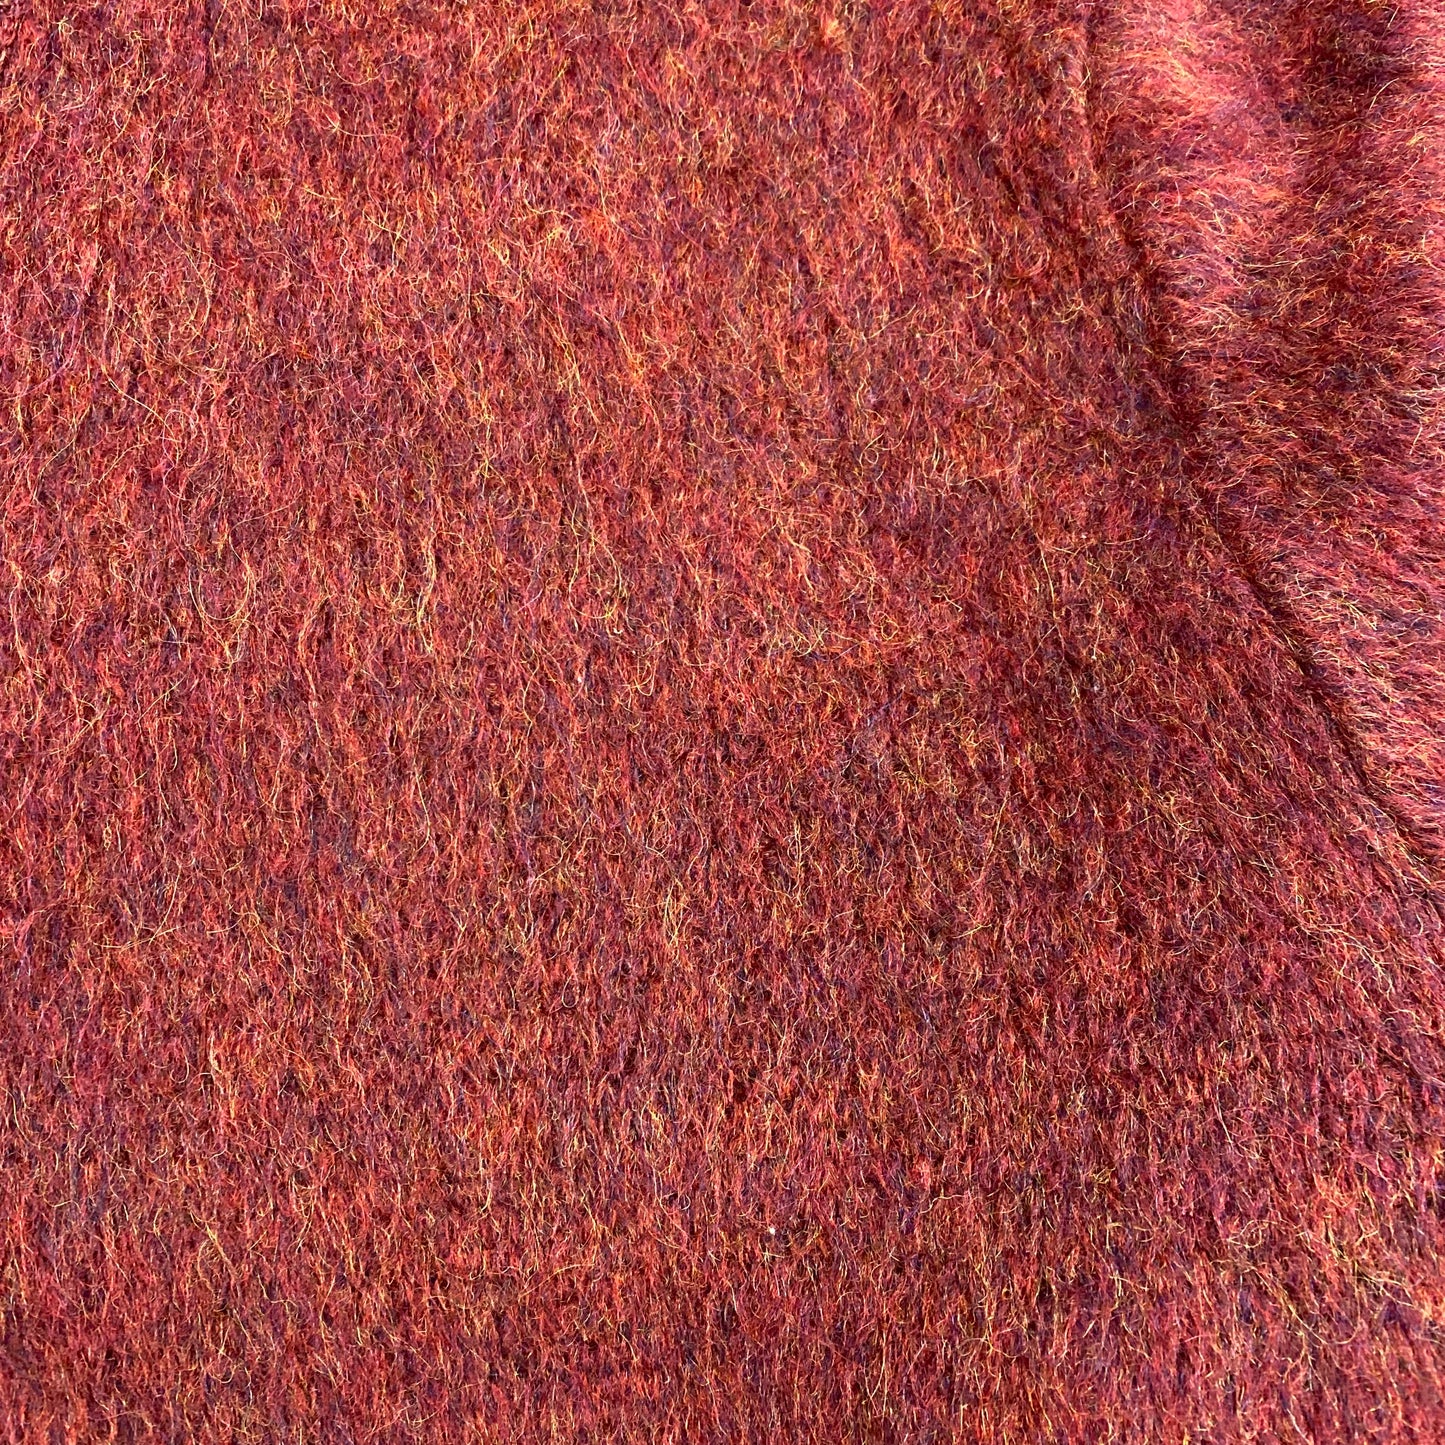 Vintage 1960s/1970s Puritan Sportswear Wool Mohair Sweater - Size XL